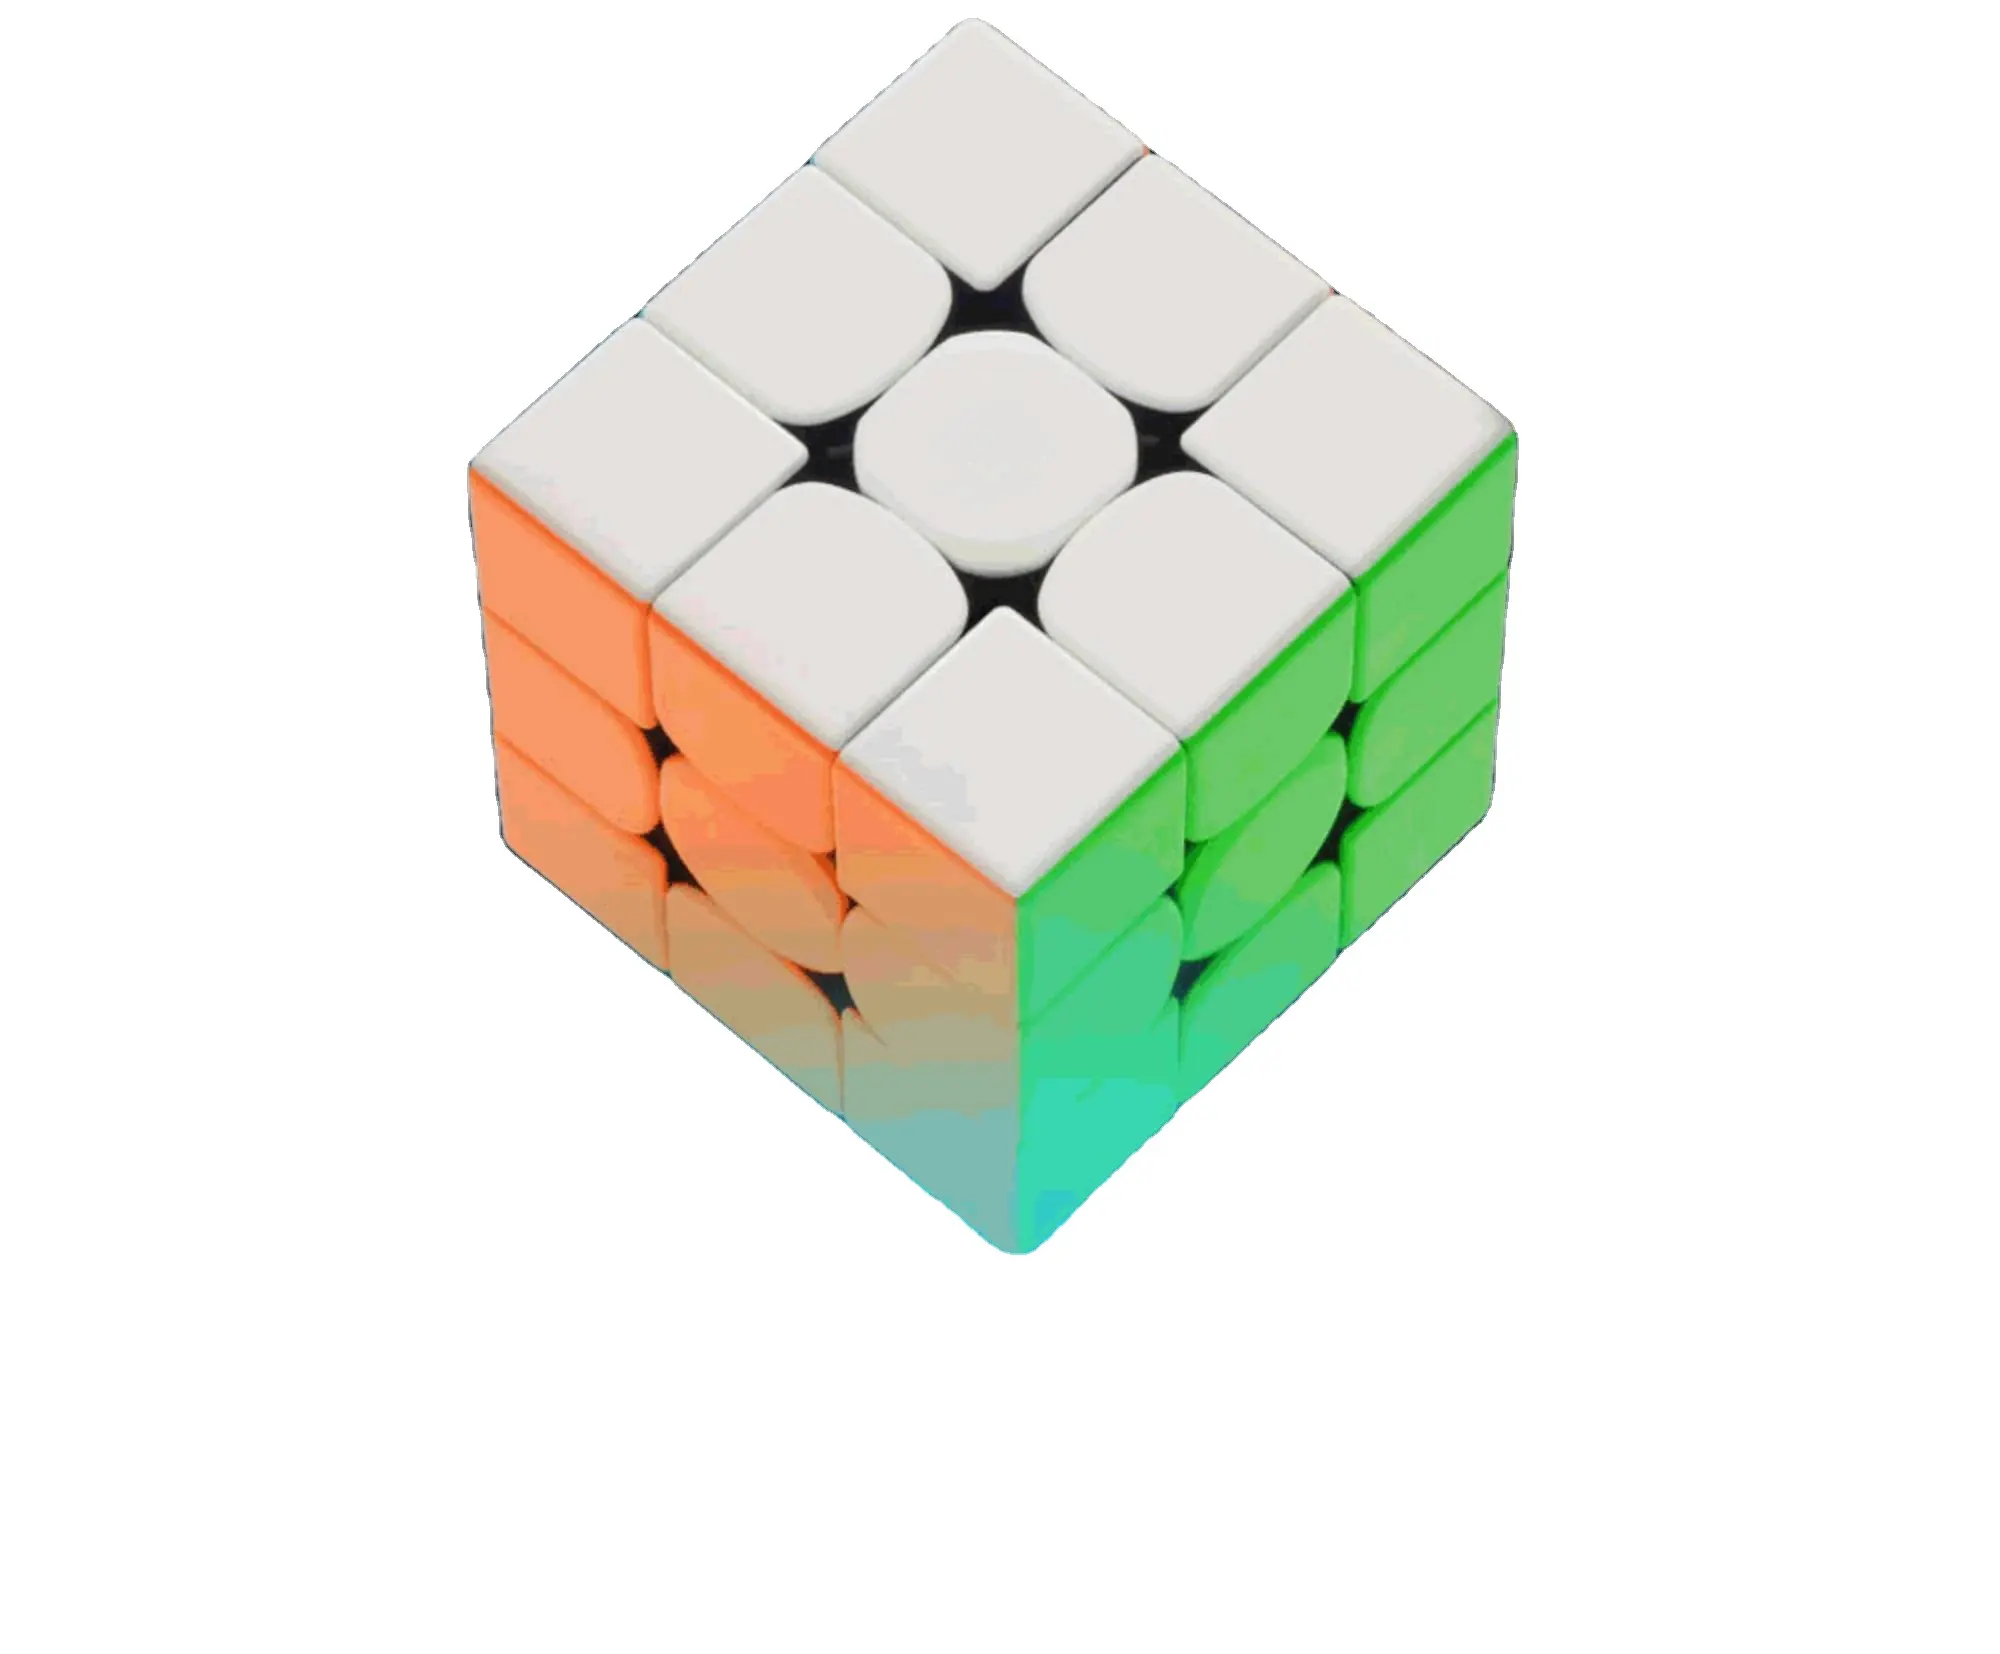 Scatola mobile antistress forma Puzzle adulto adolescente bambino che gioca giocattolo cubo magico 3*3*3